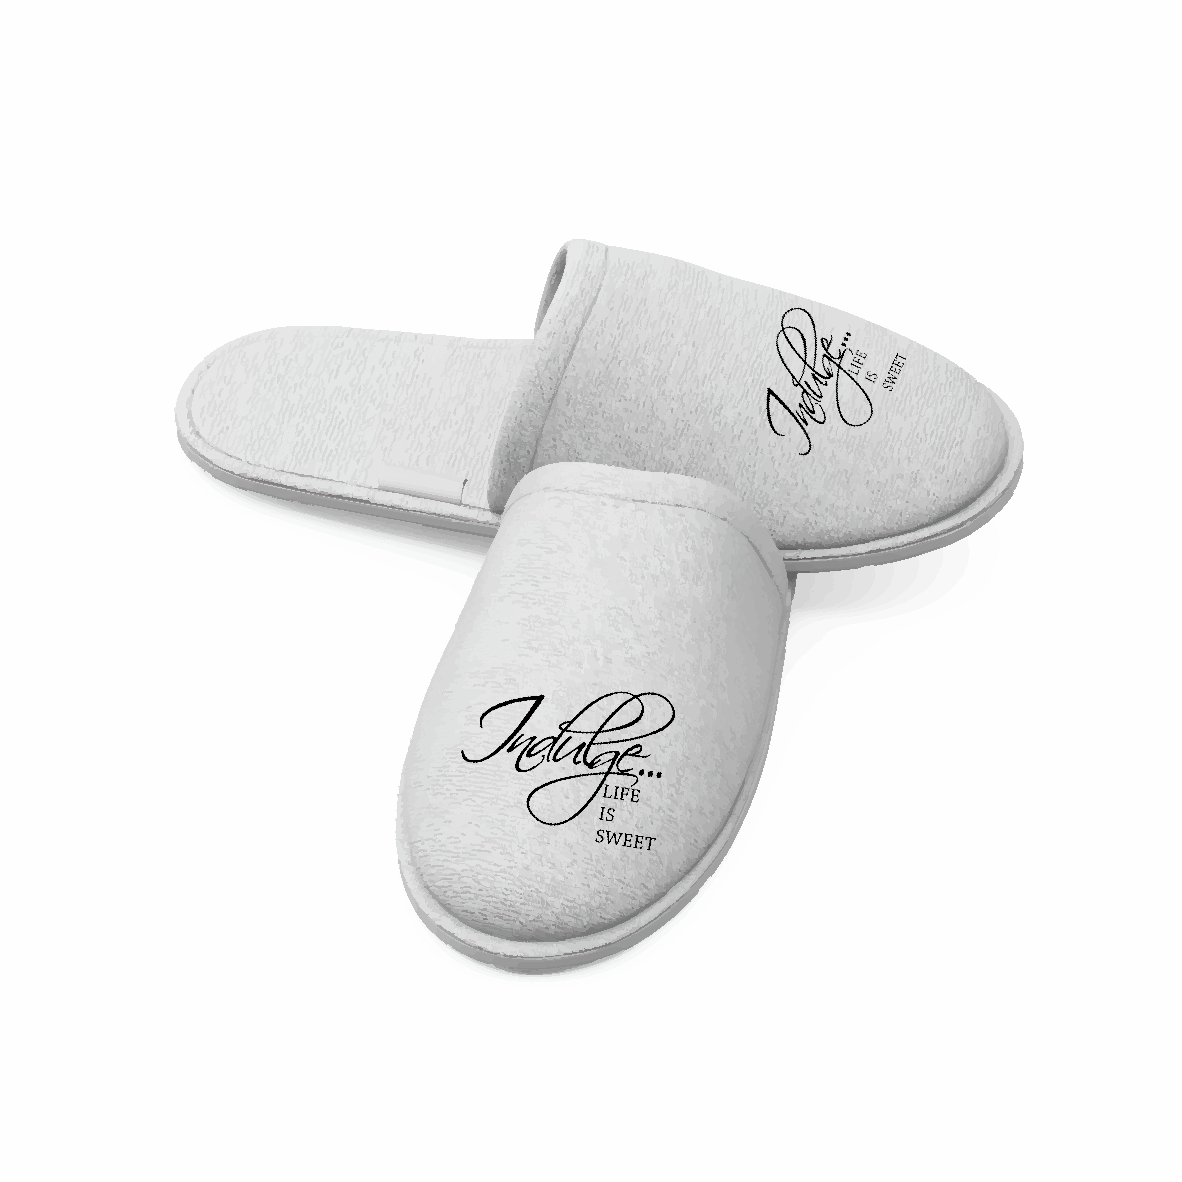 Personalise these velvet slippers